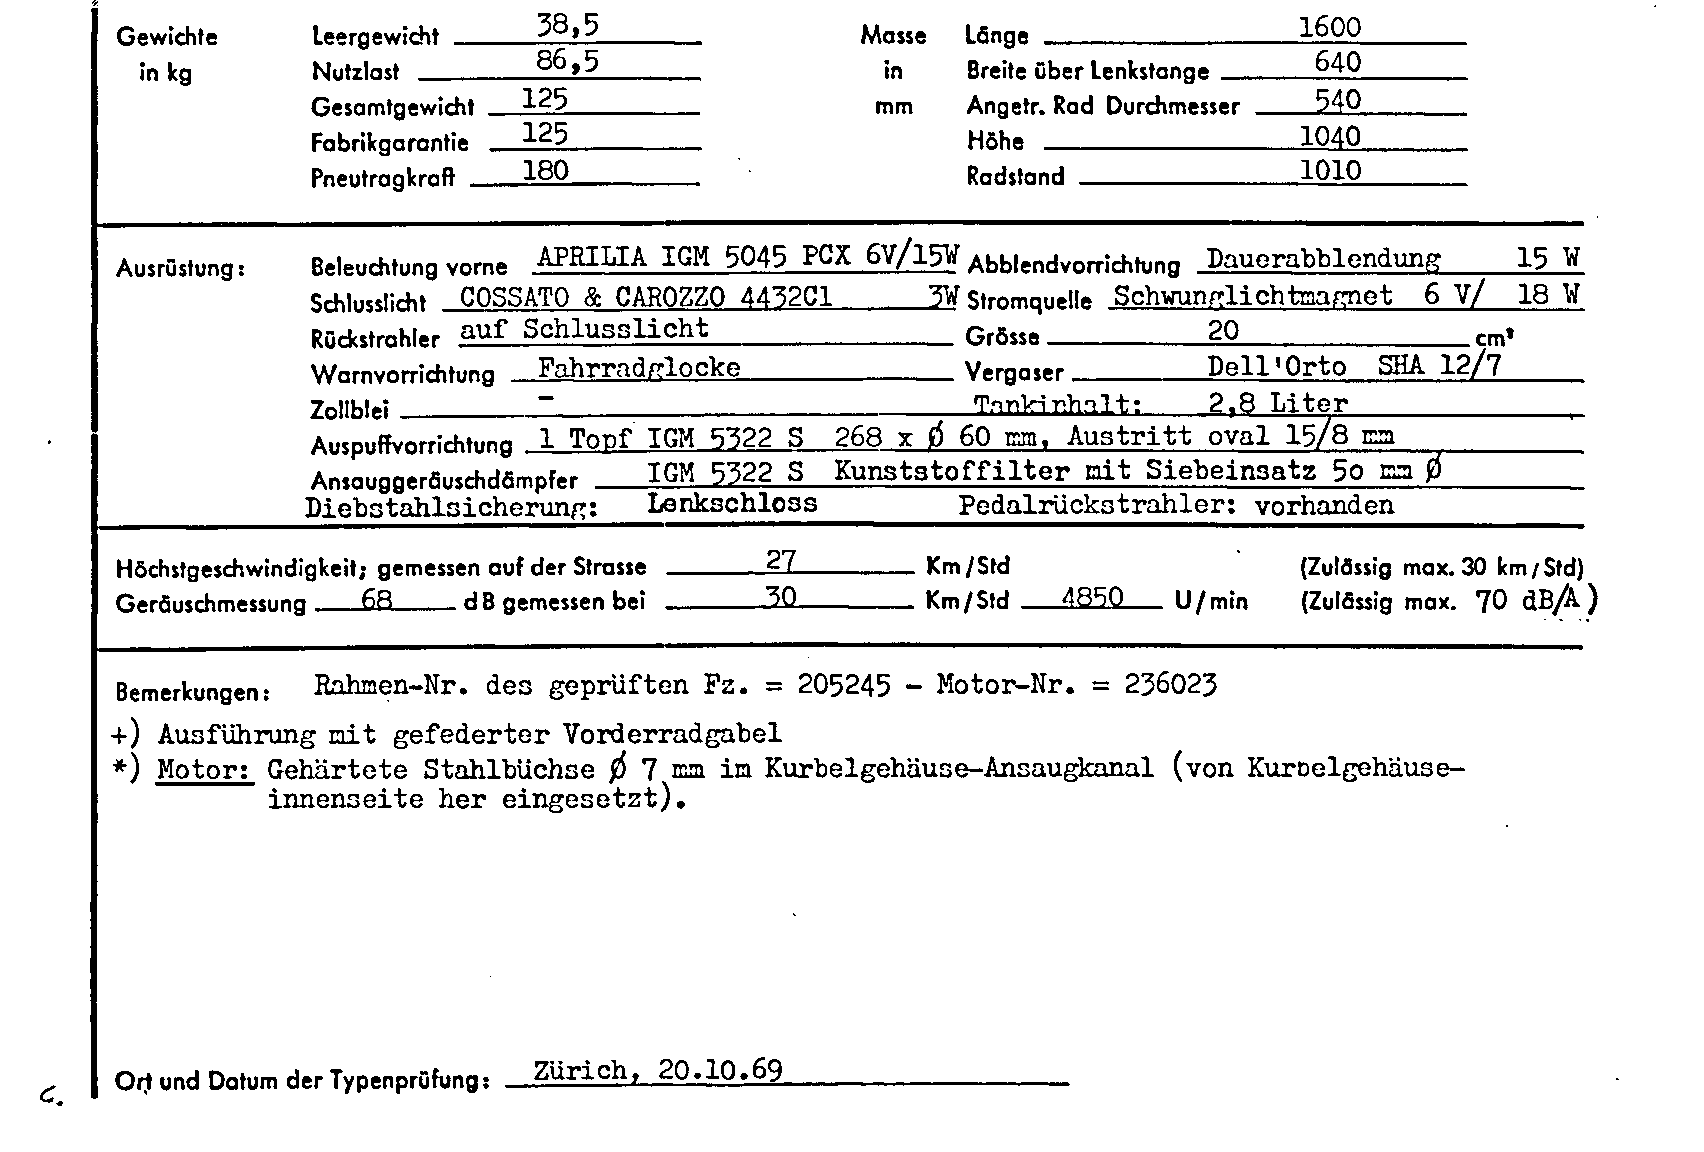 Schweizer Typenschein 7075 Deutsch Seite 2 (TG.DE.7075.2.png)